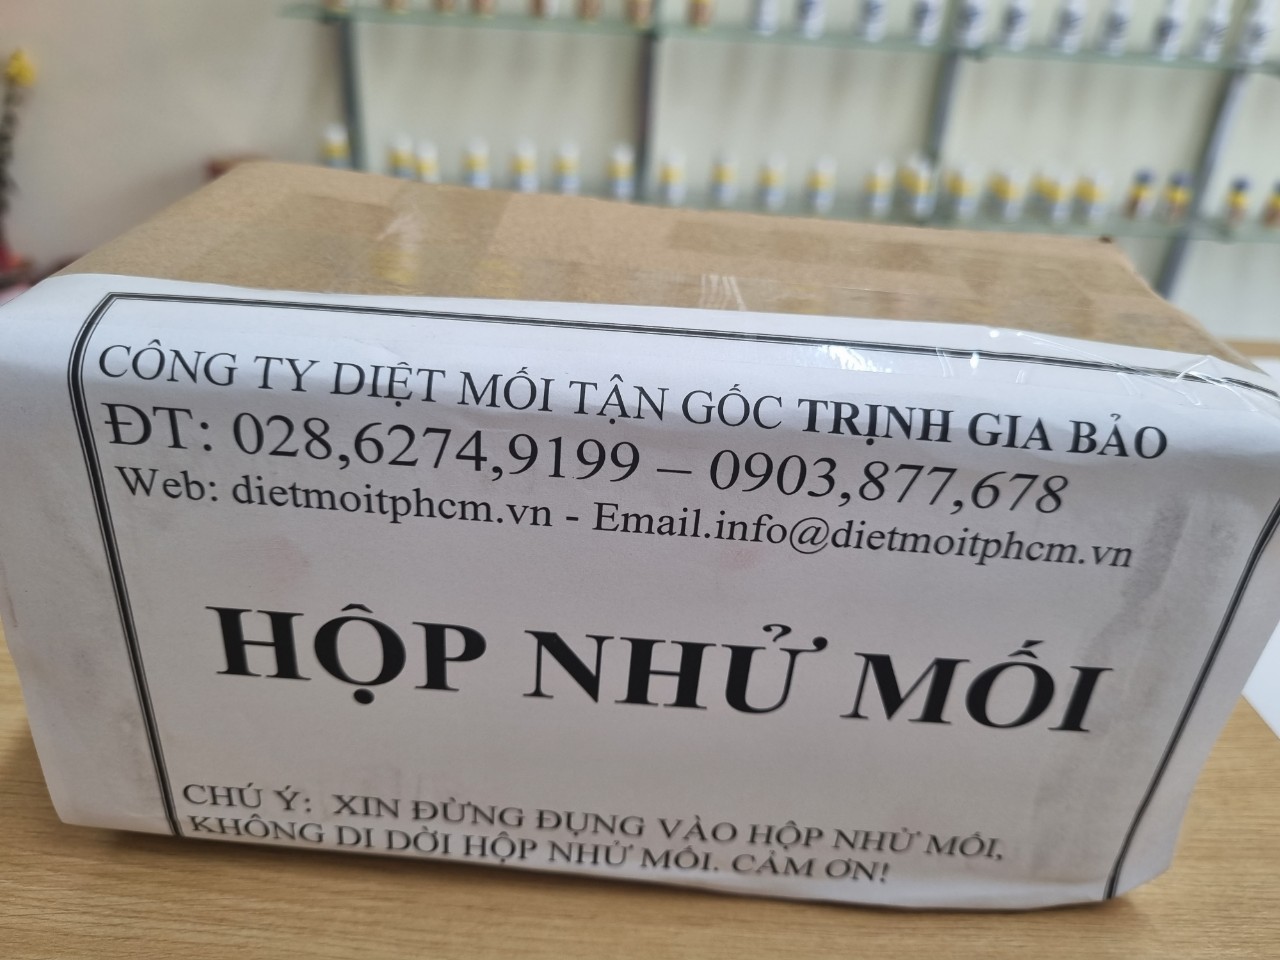 Dịch Vụ Diệt Mối Tận Gốc Trịnh Gia Bảo